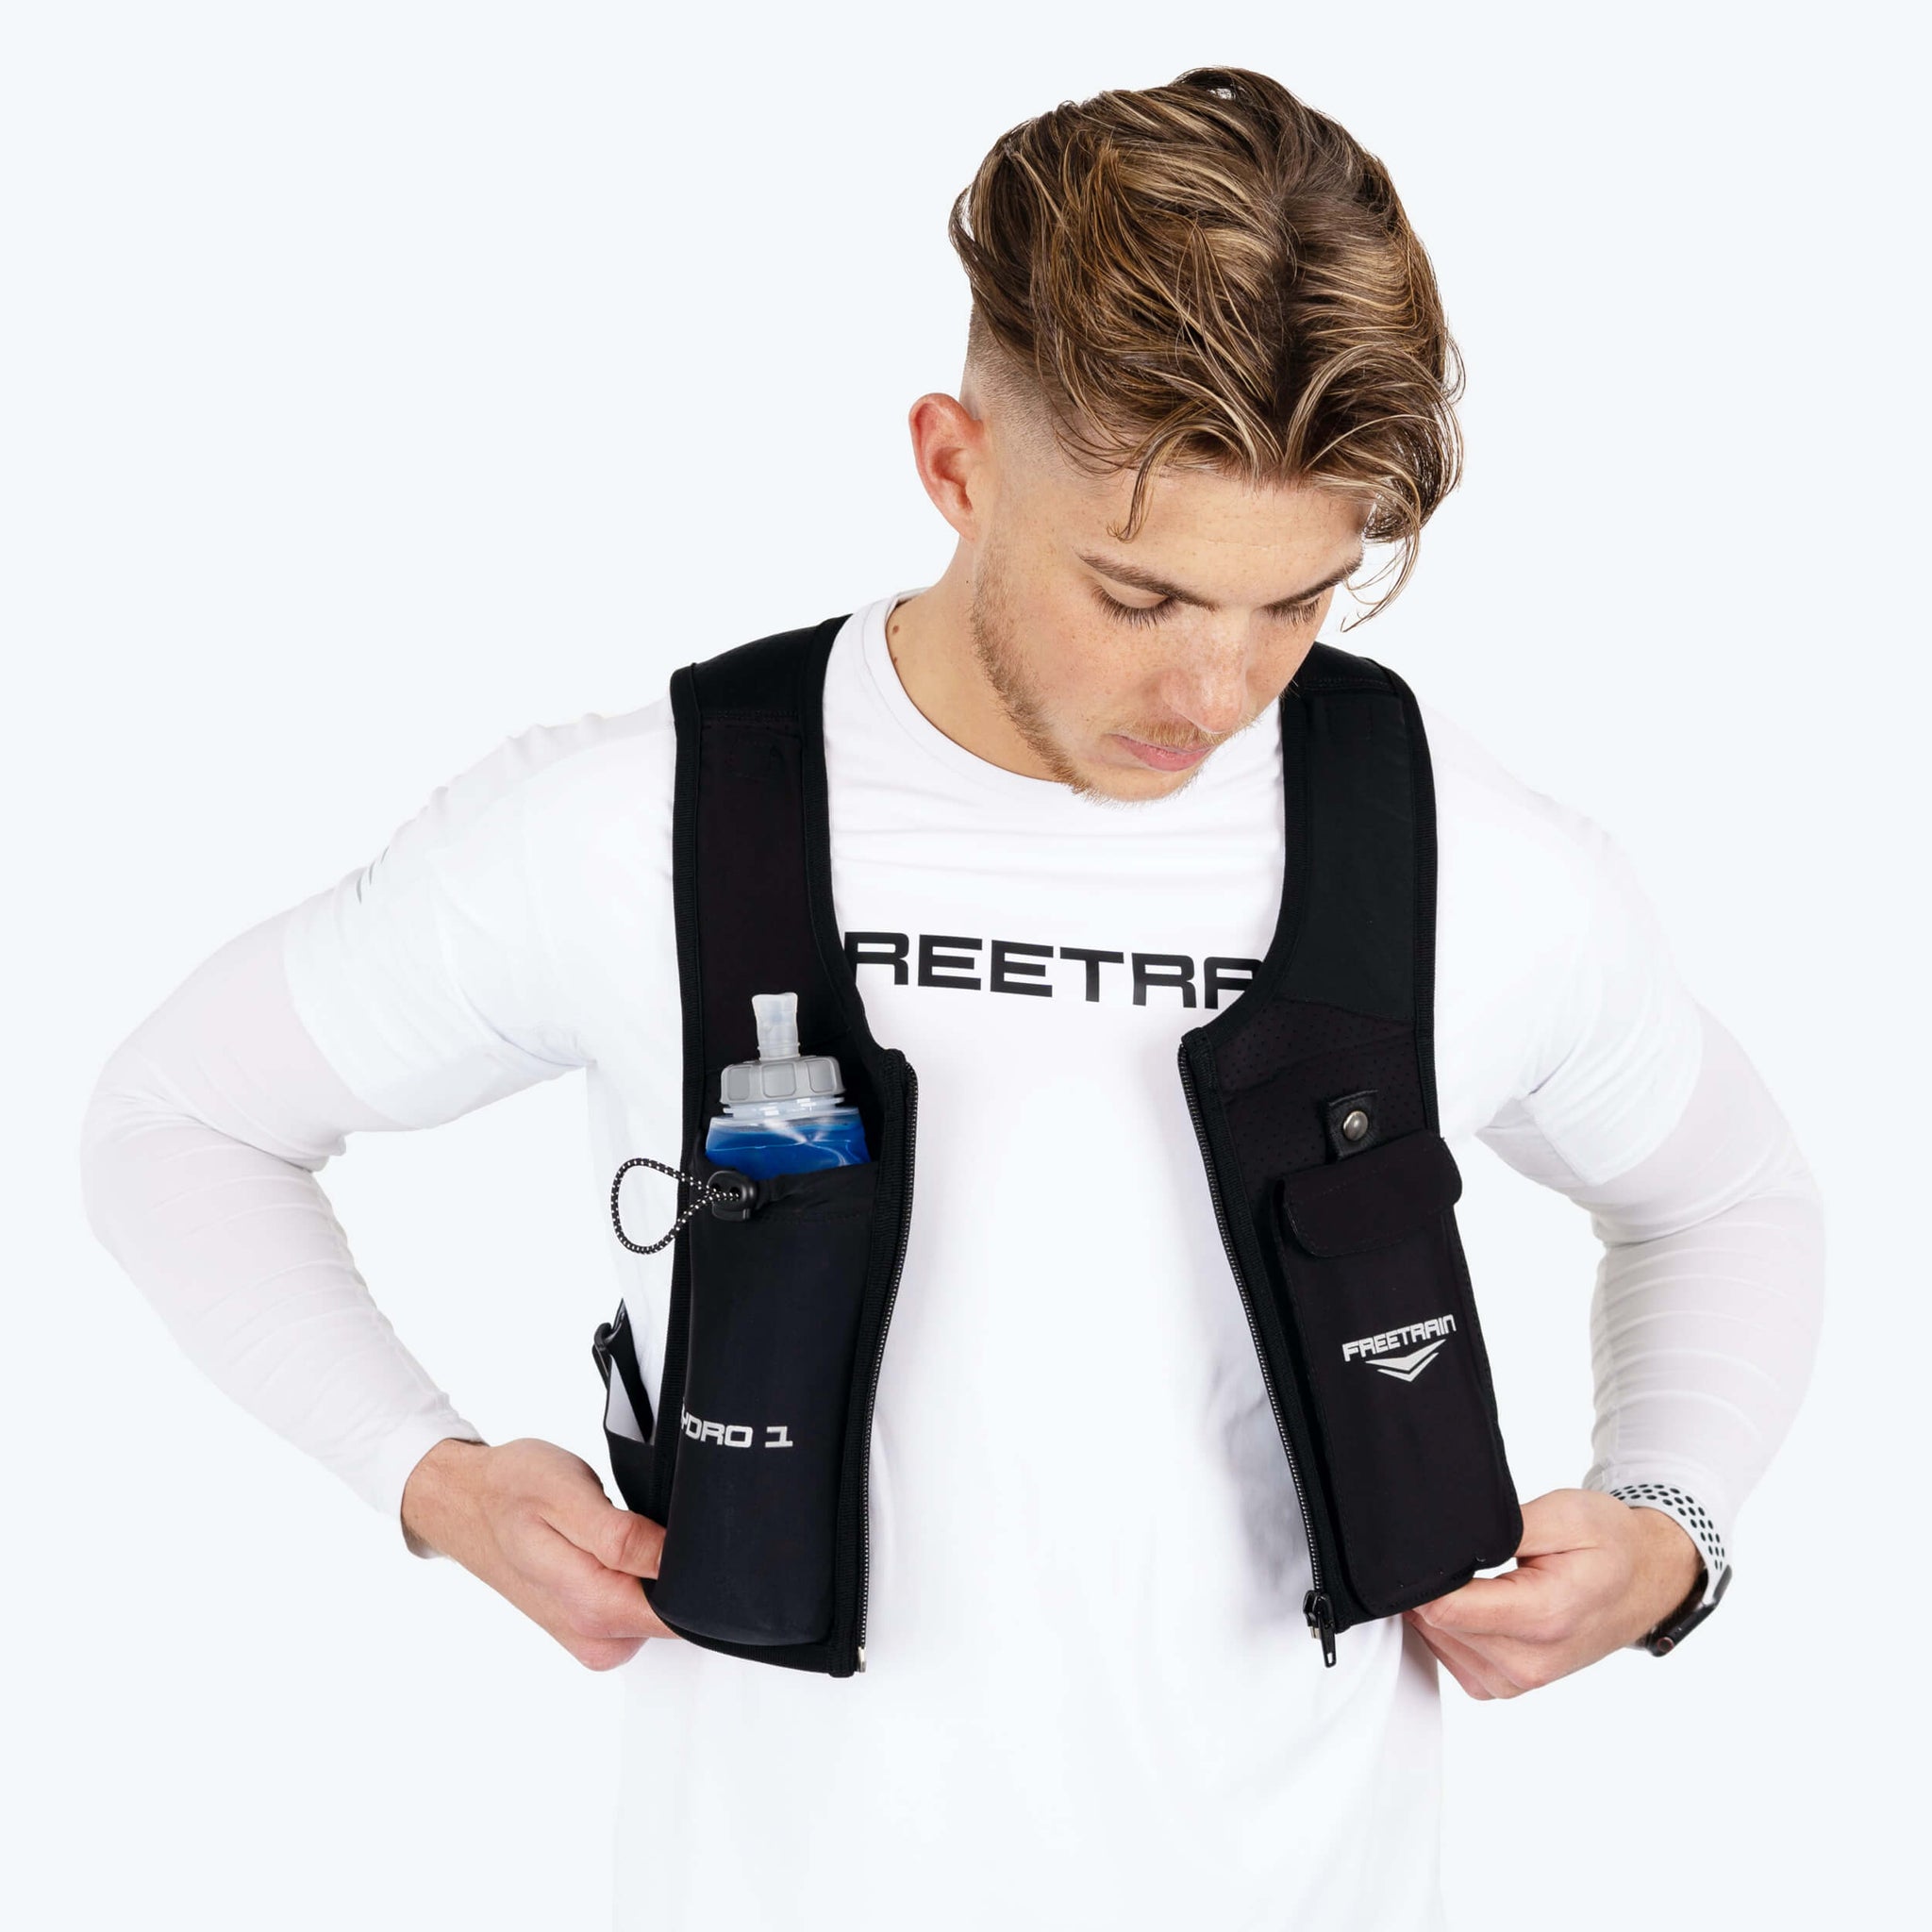 Freetrain Hydro 1 Vest